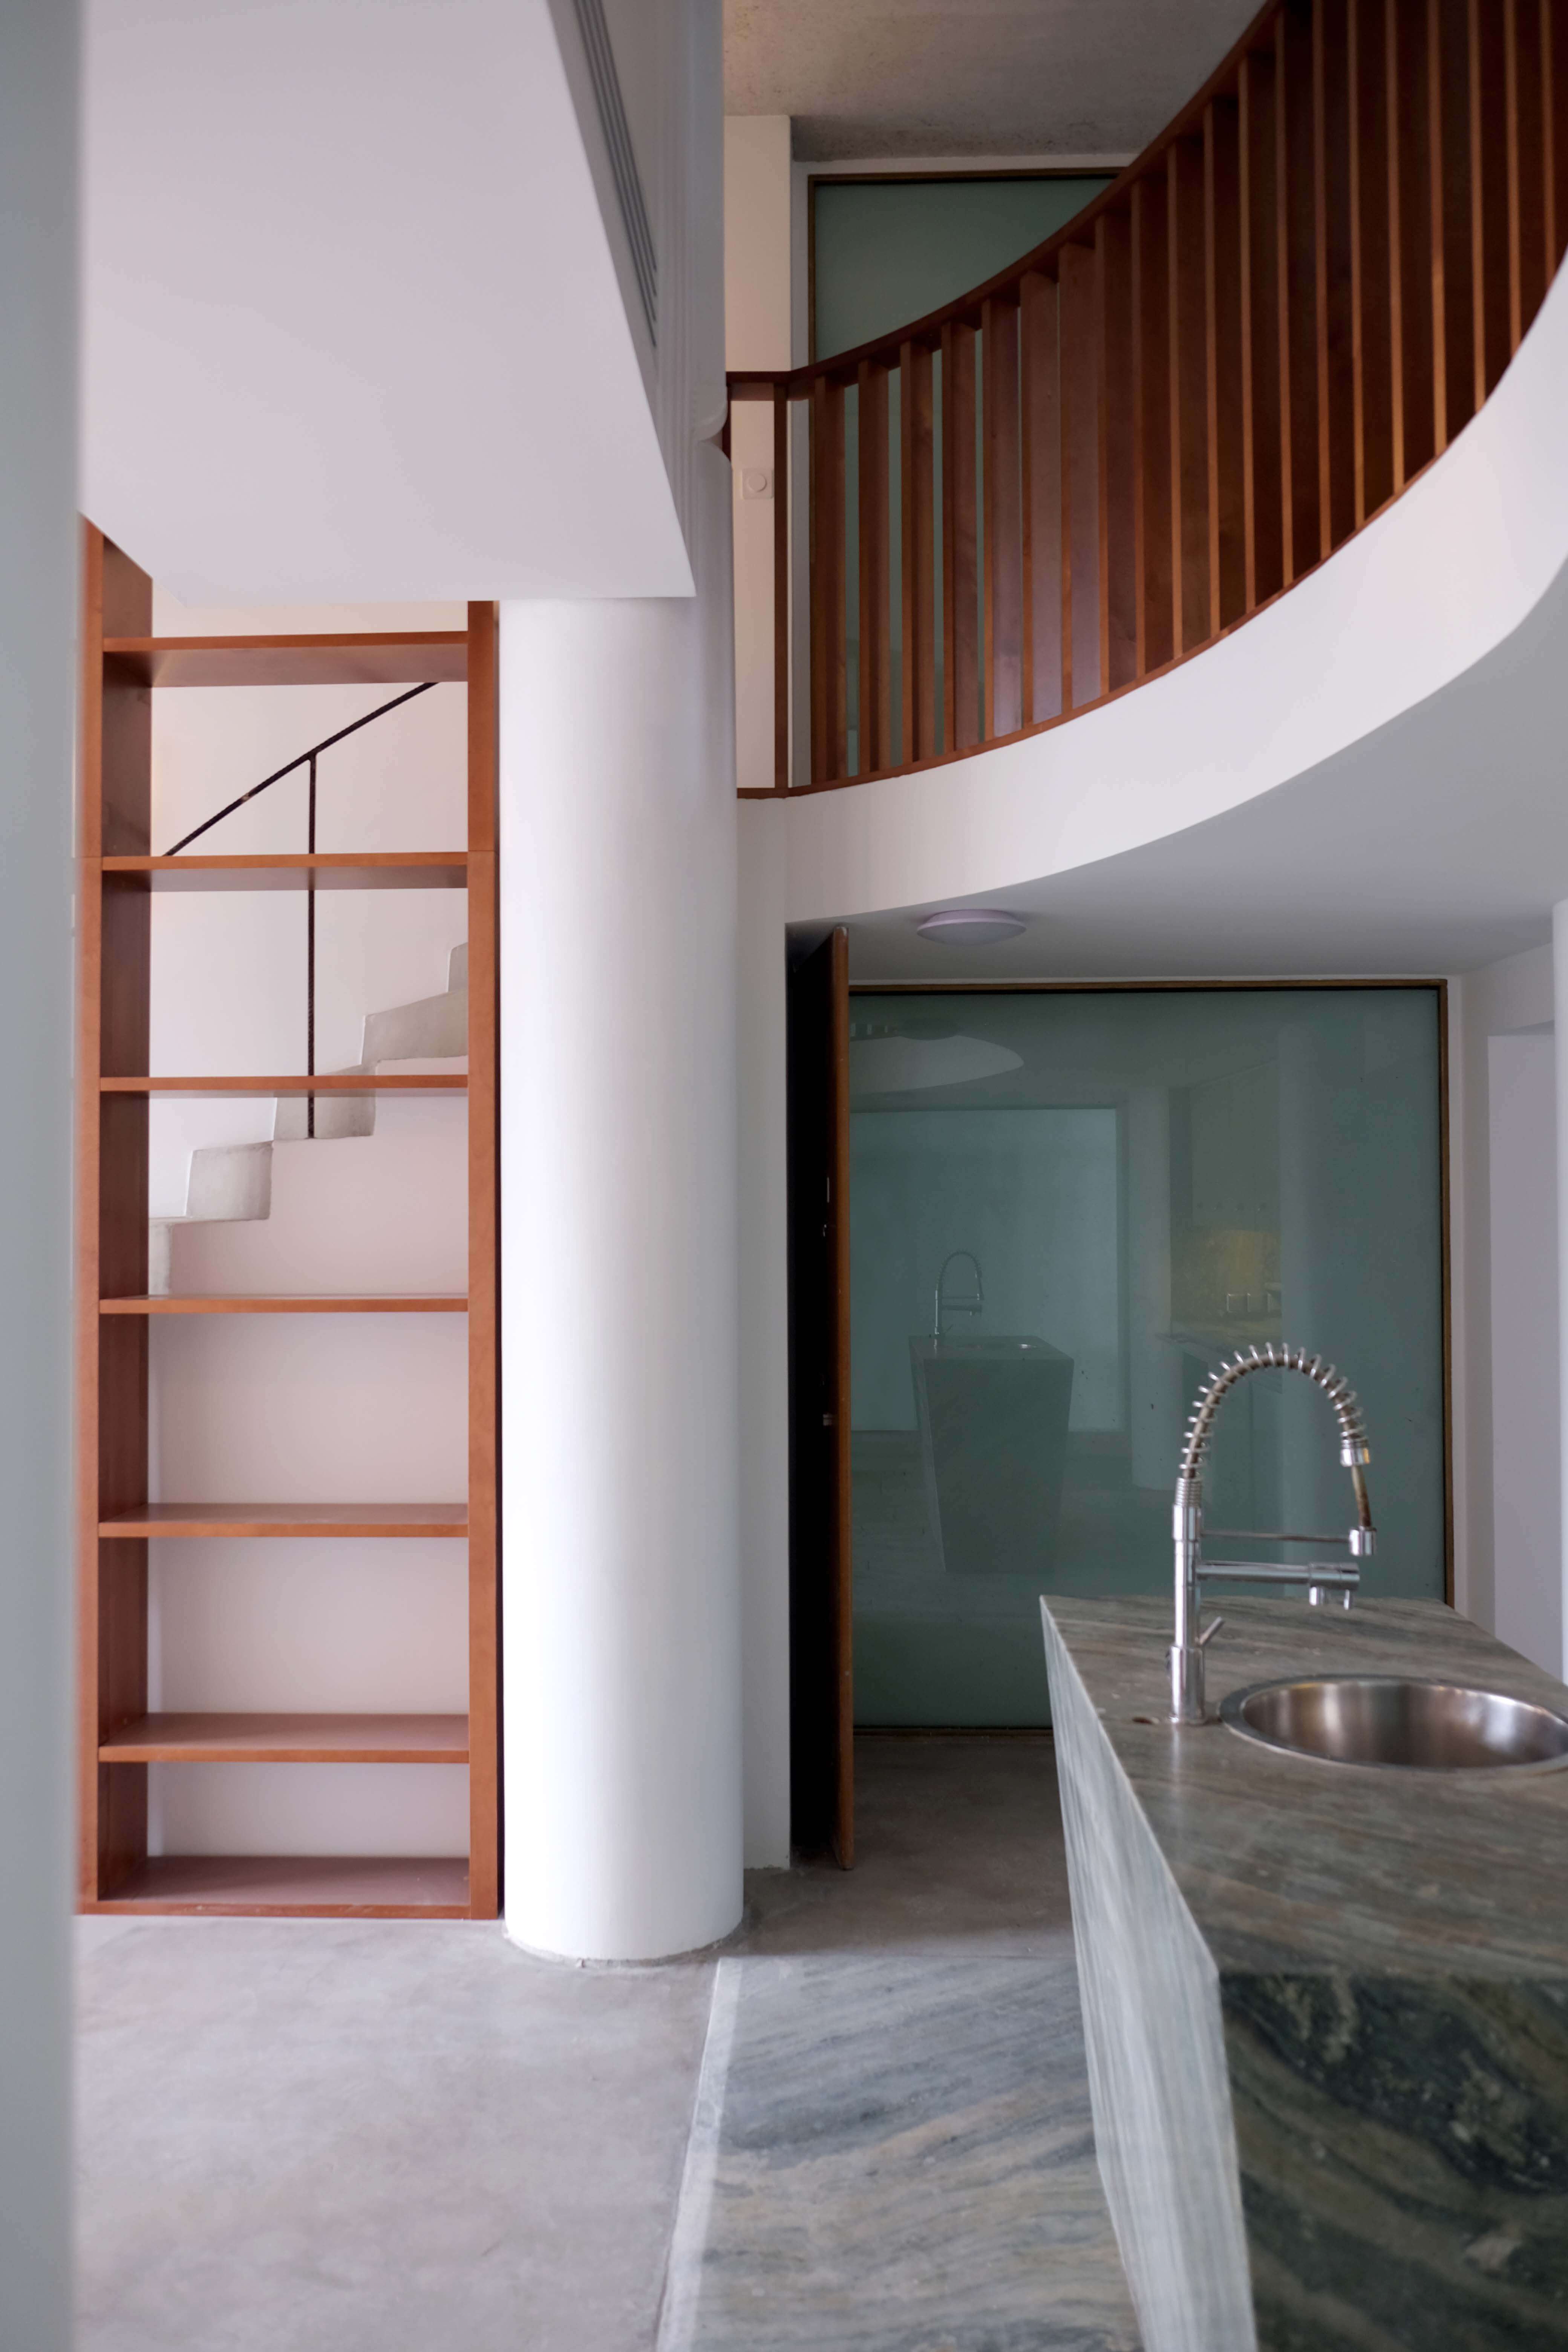 Rénovation complète d'une maison designée par Philippe Starck